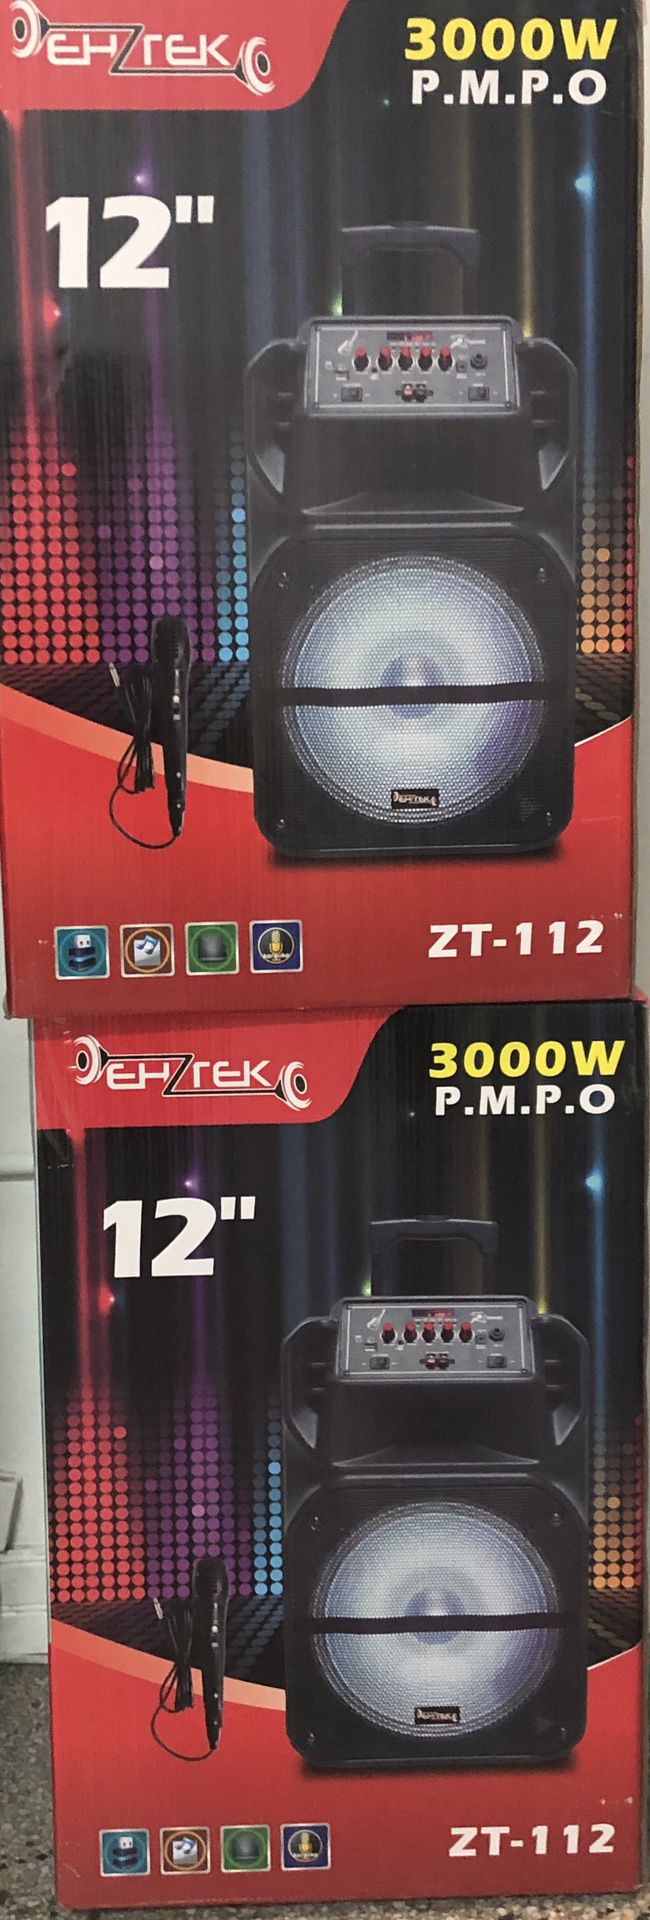 Zenith speakers karaoke 3000W